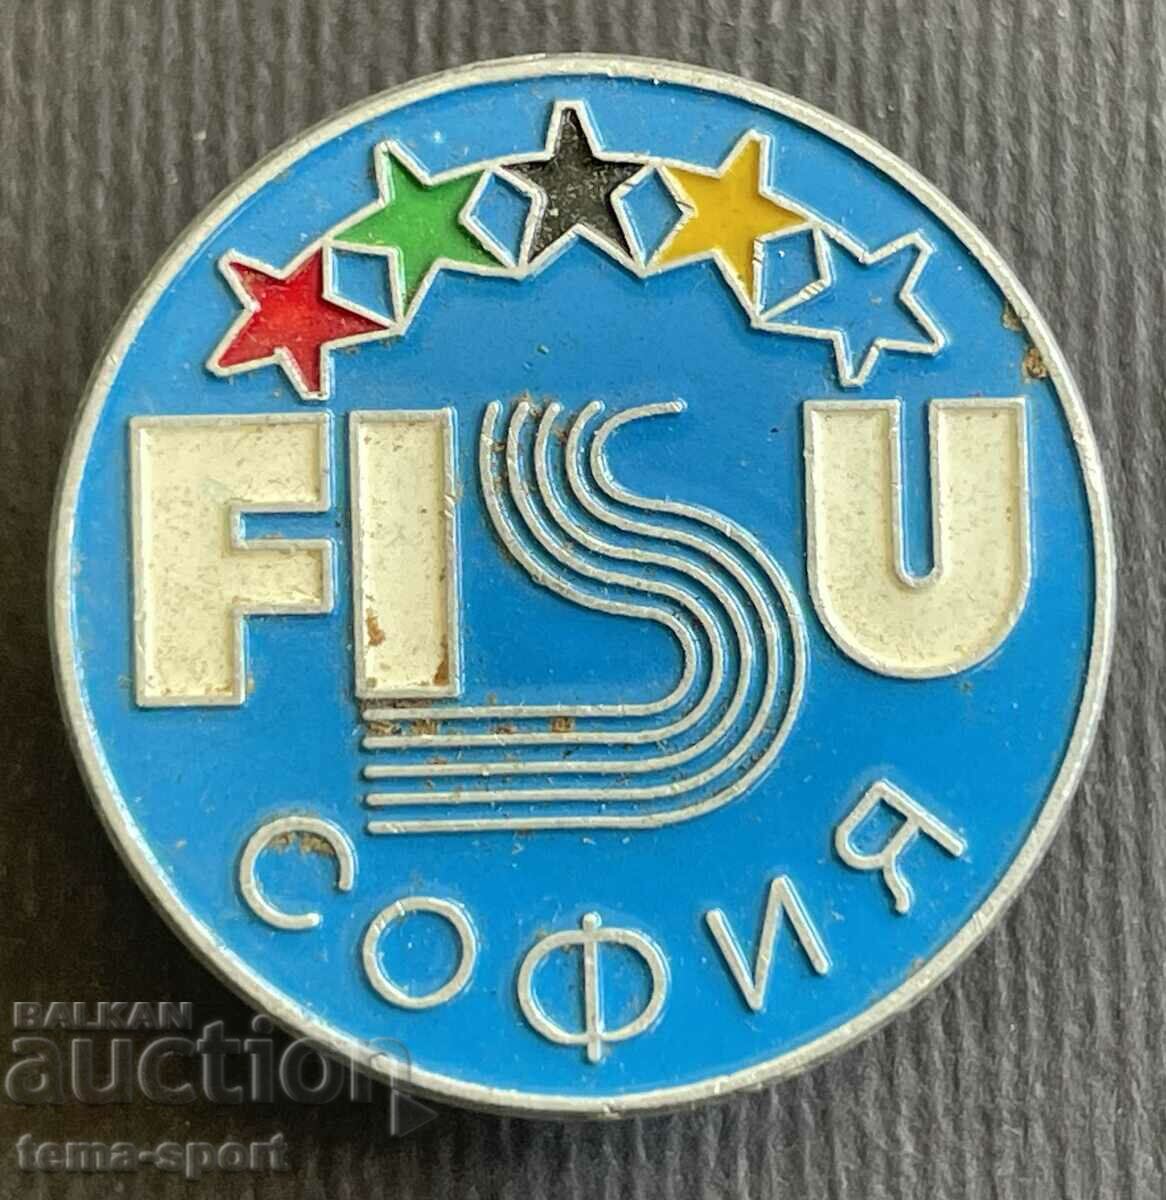 290 Βουλγαρία υπογράφει FISU International University Sports